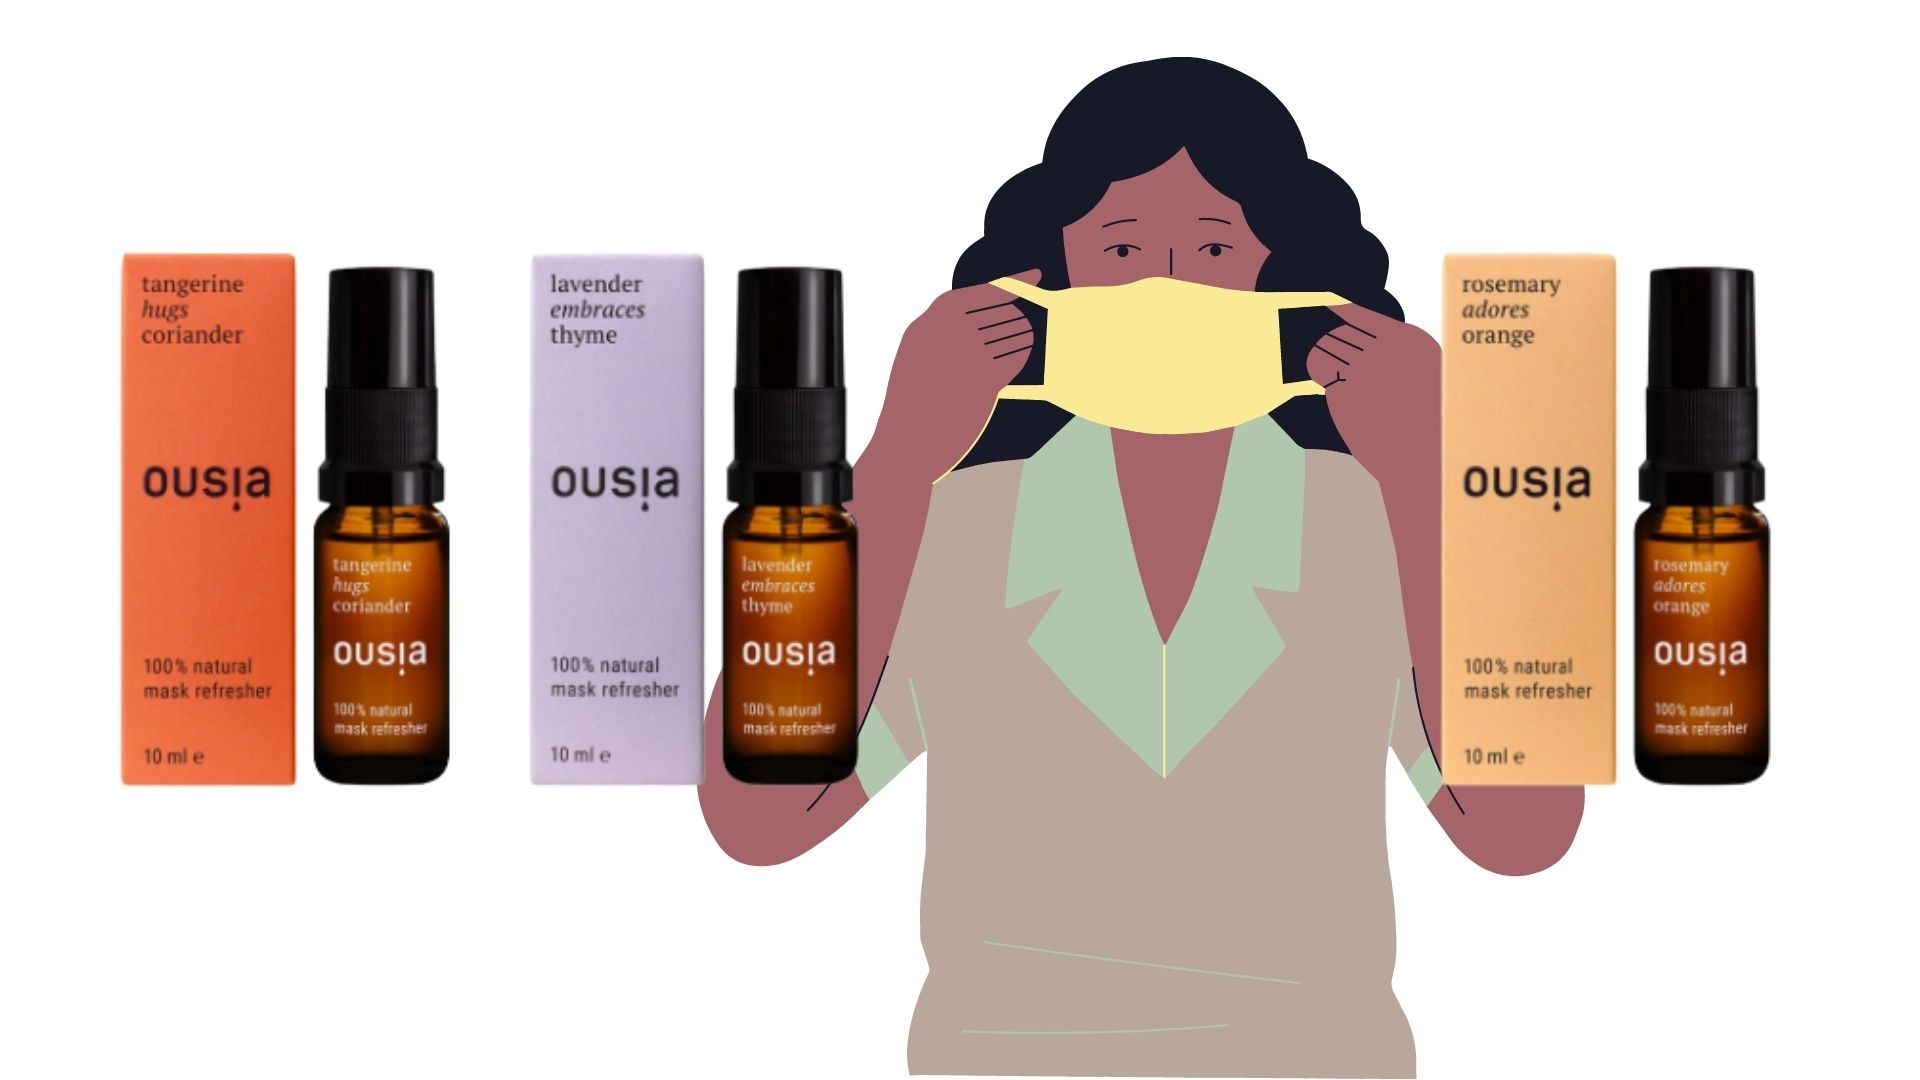 Refresh your mask: Maskensprays mit ätherischen Ölen